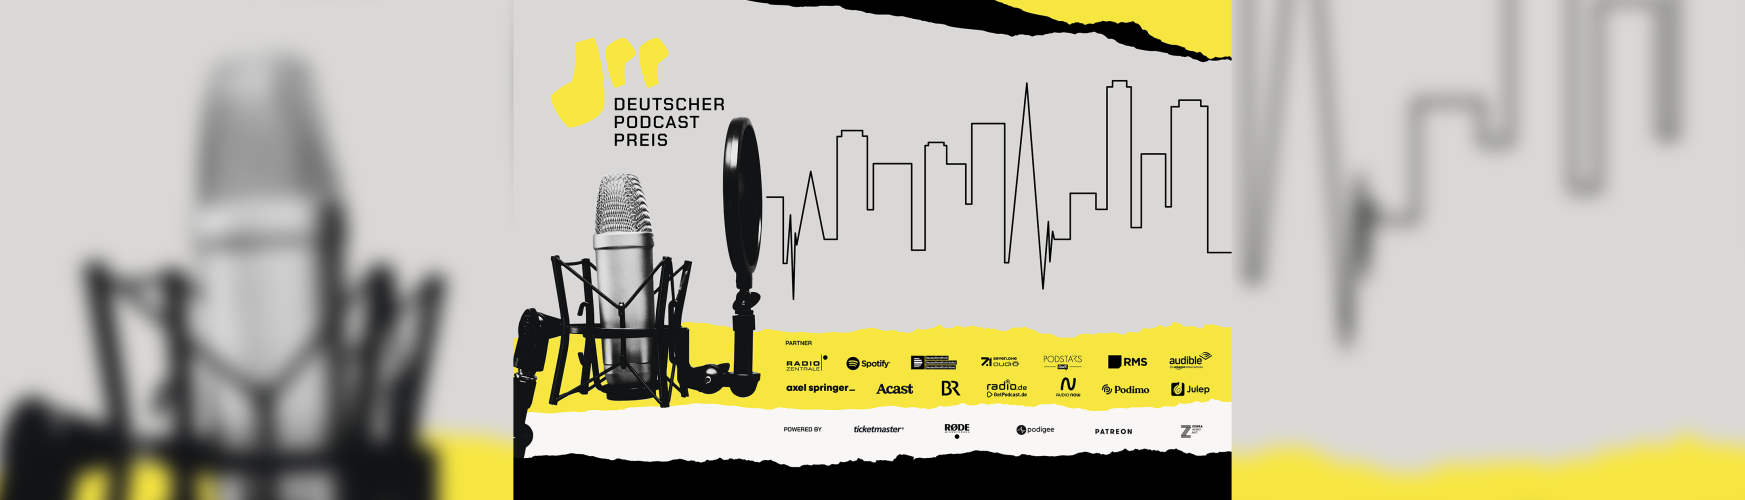 Deutscher Podcast Preis 2021